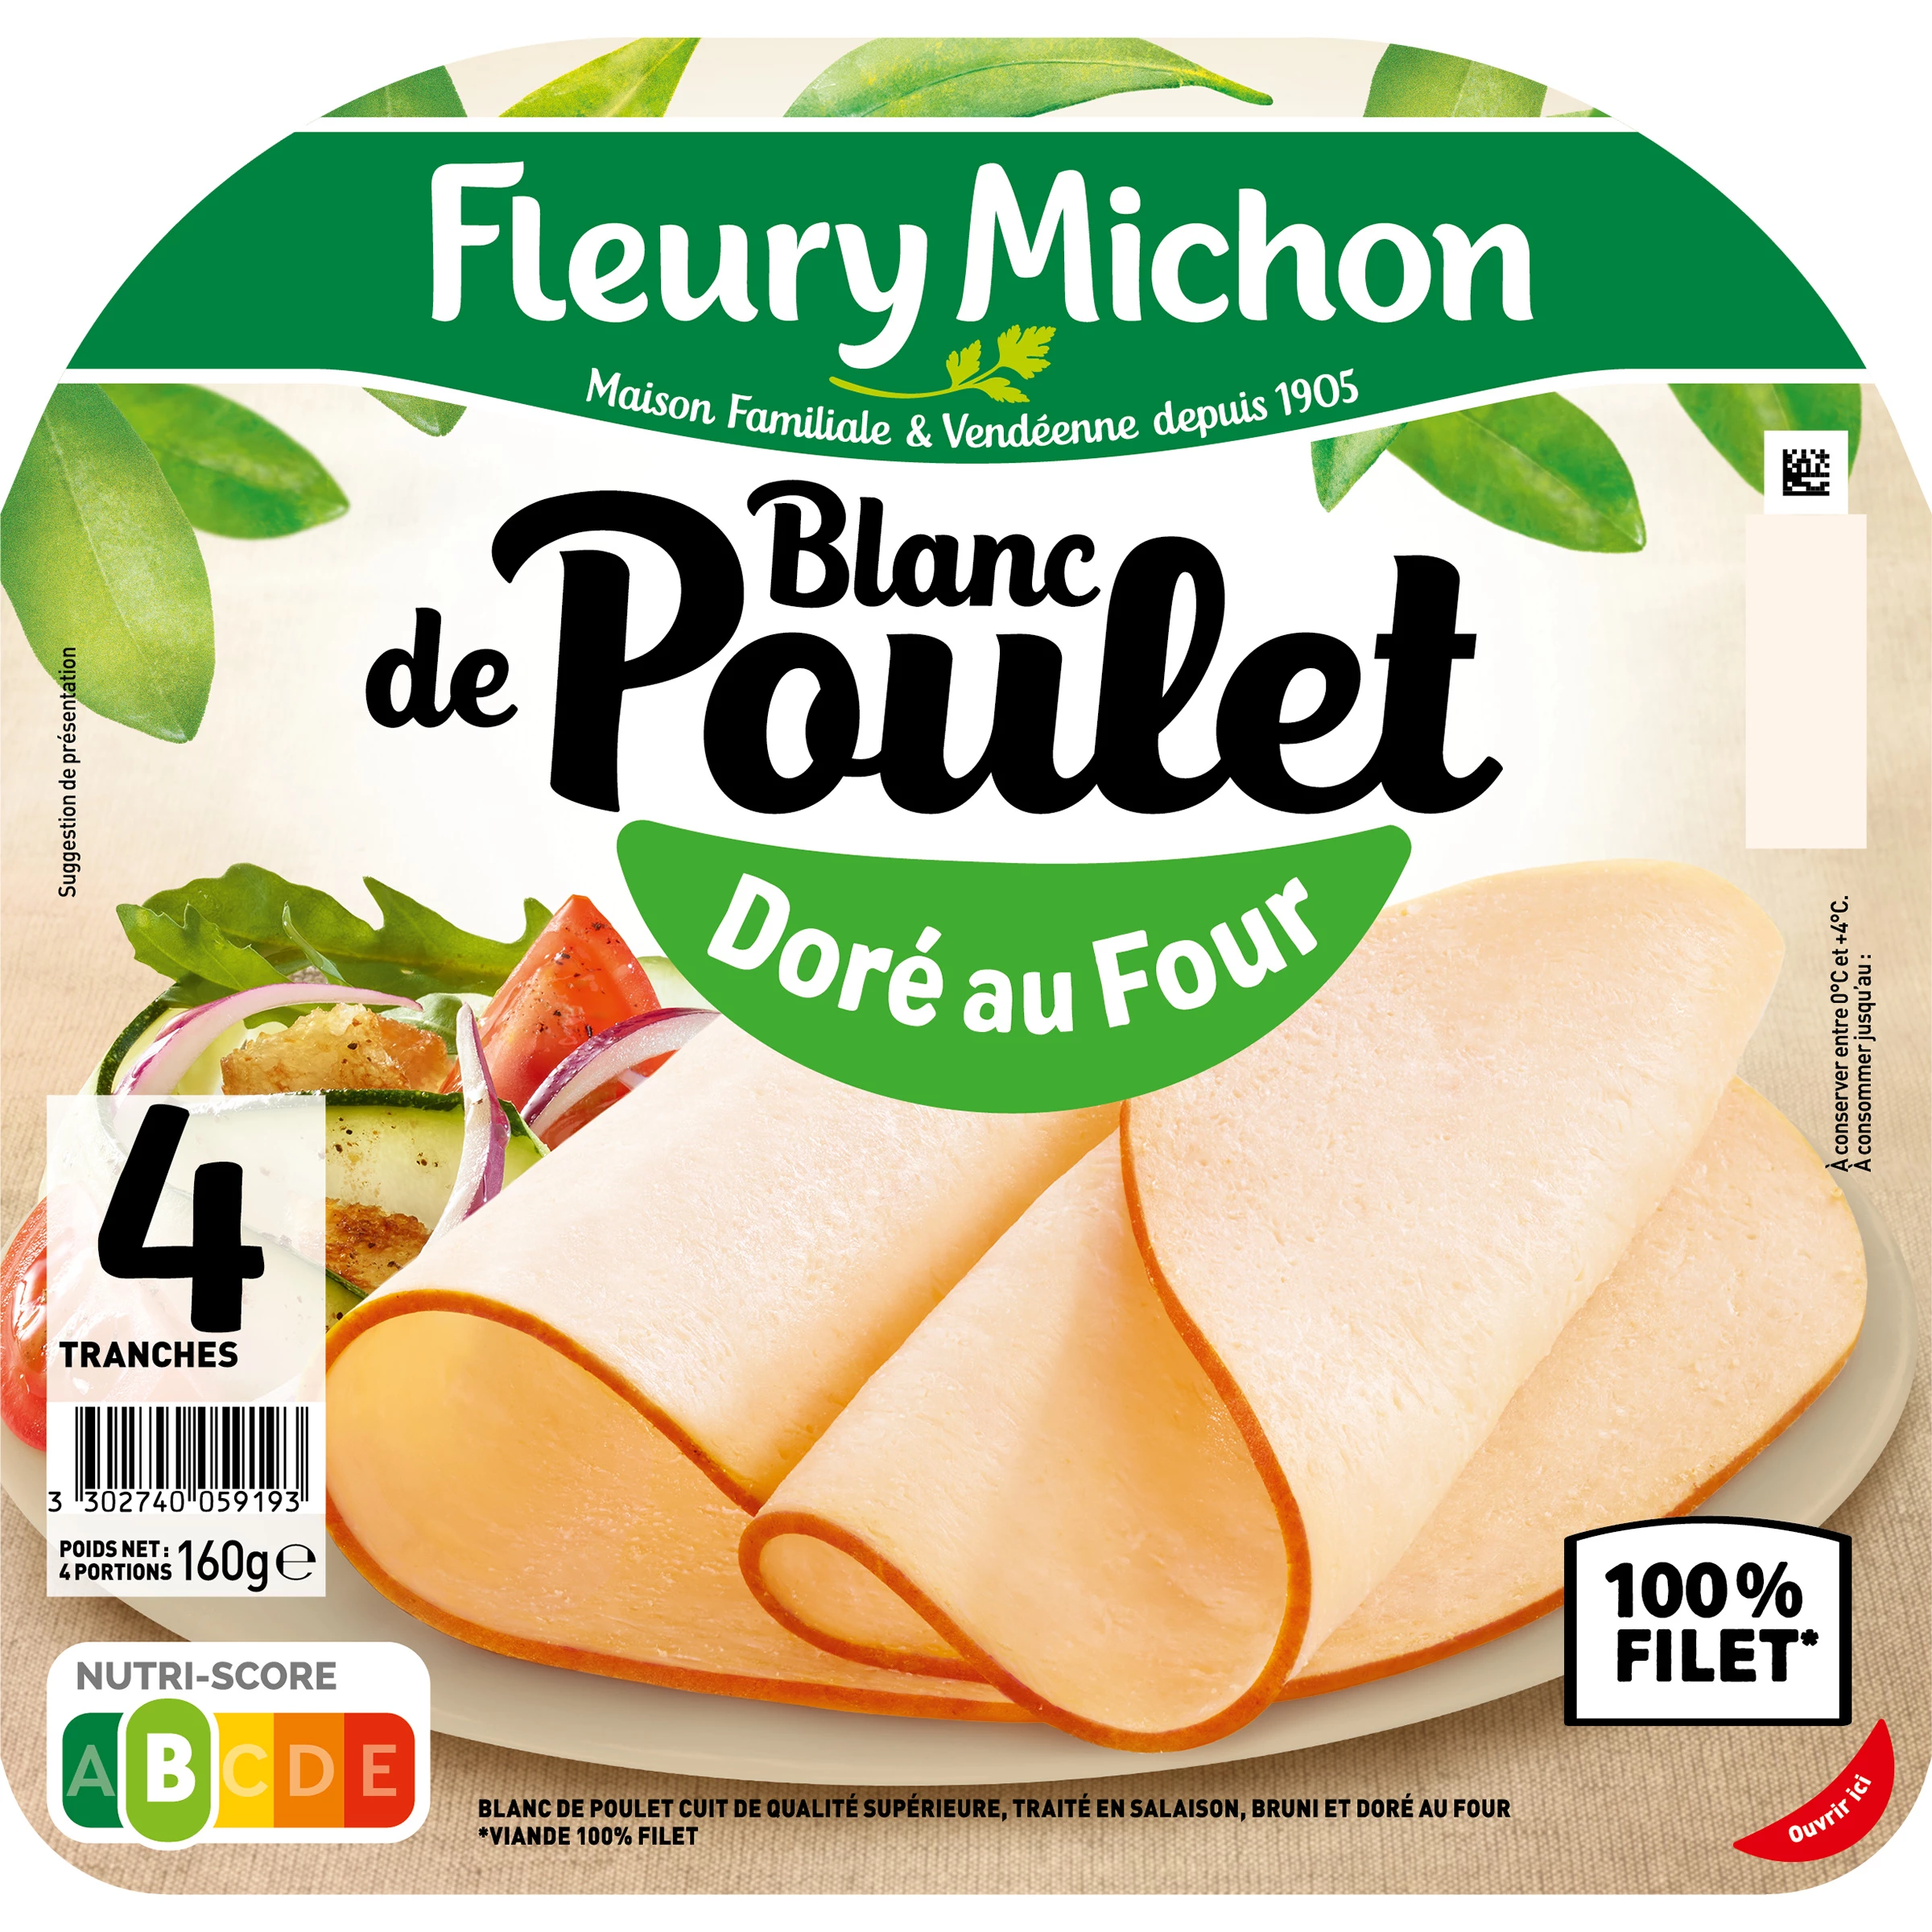 Blanc de Poulet Doré au Four, 4 Tranches - FLEURY MICHON